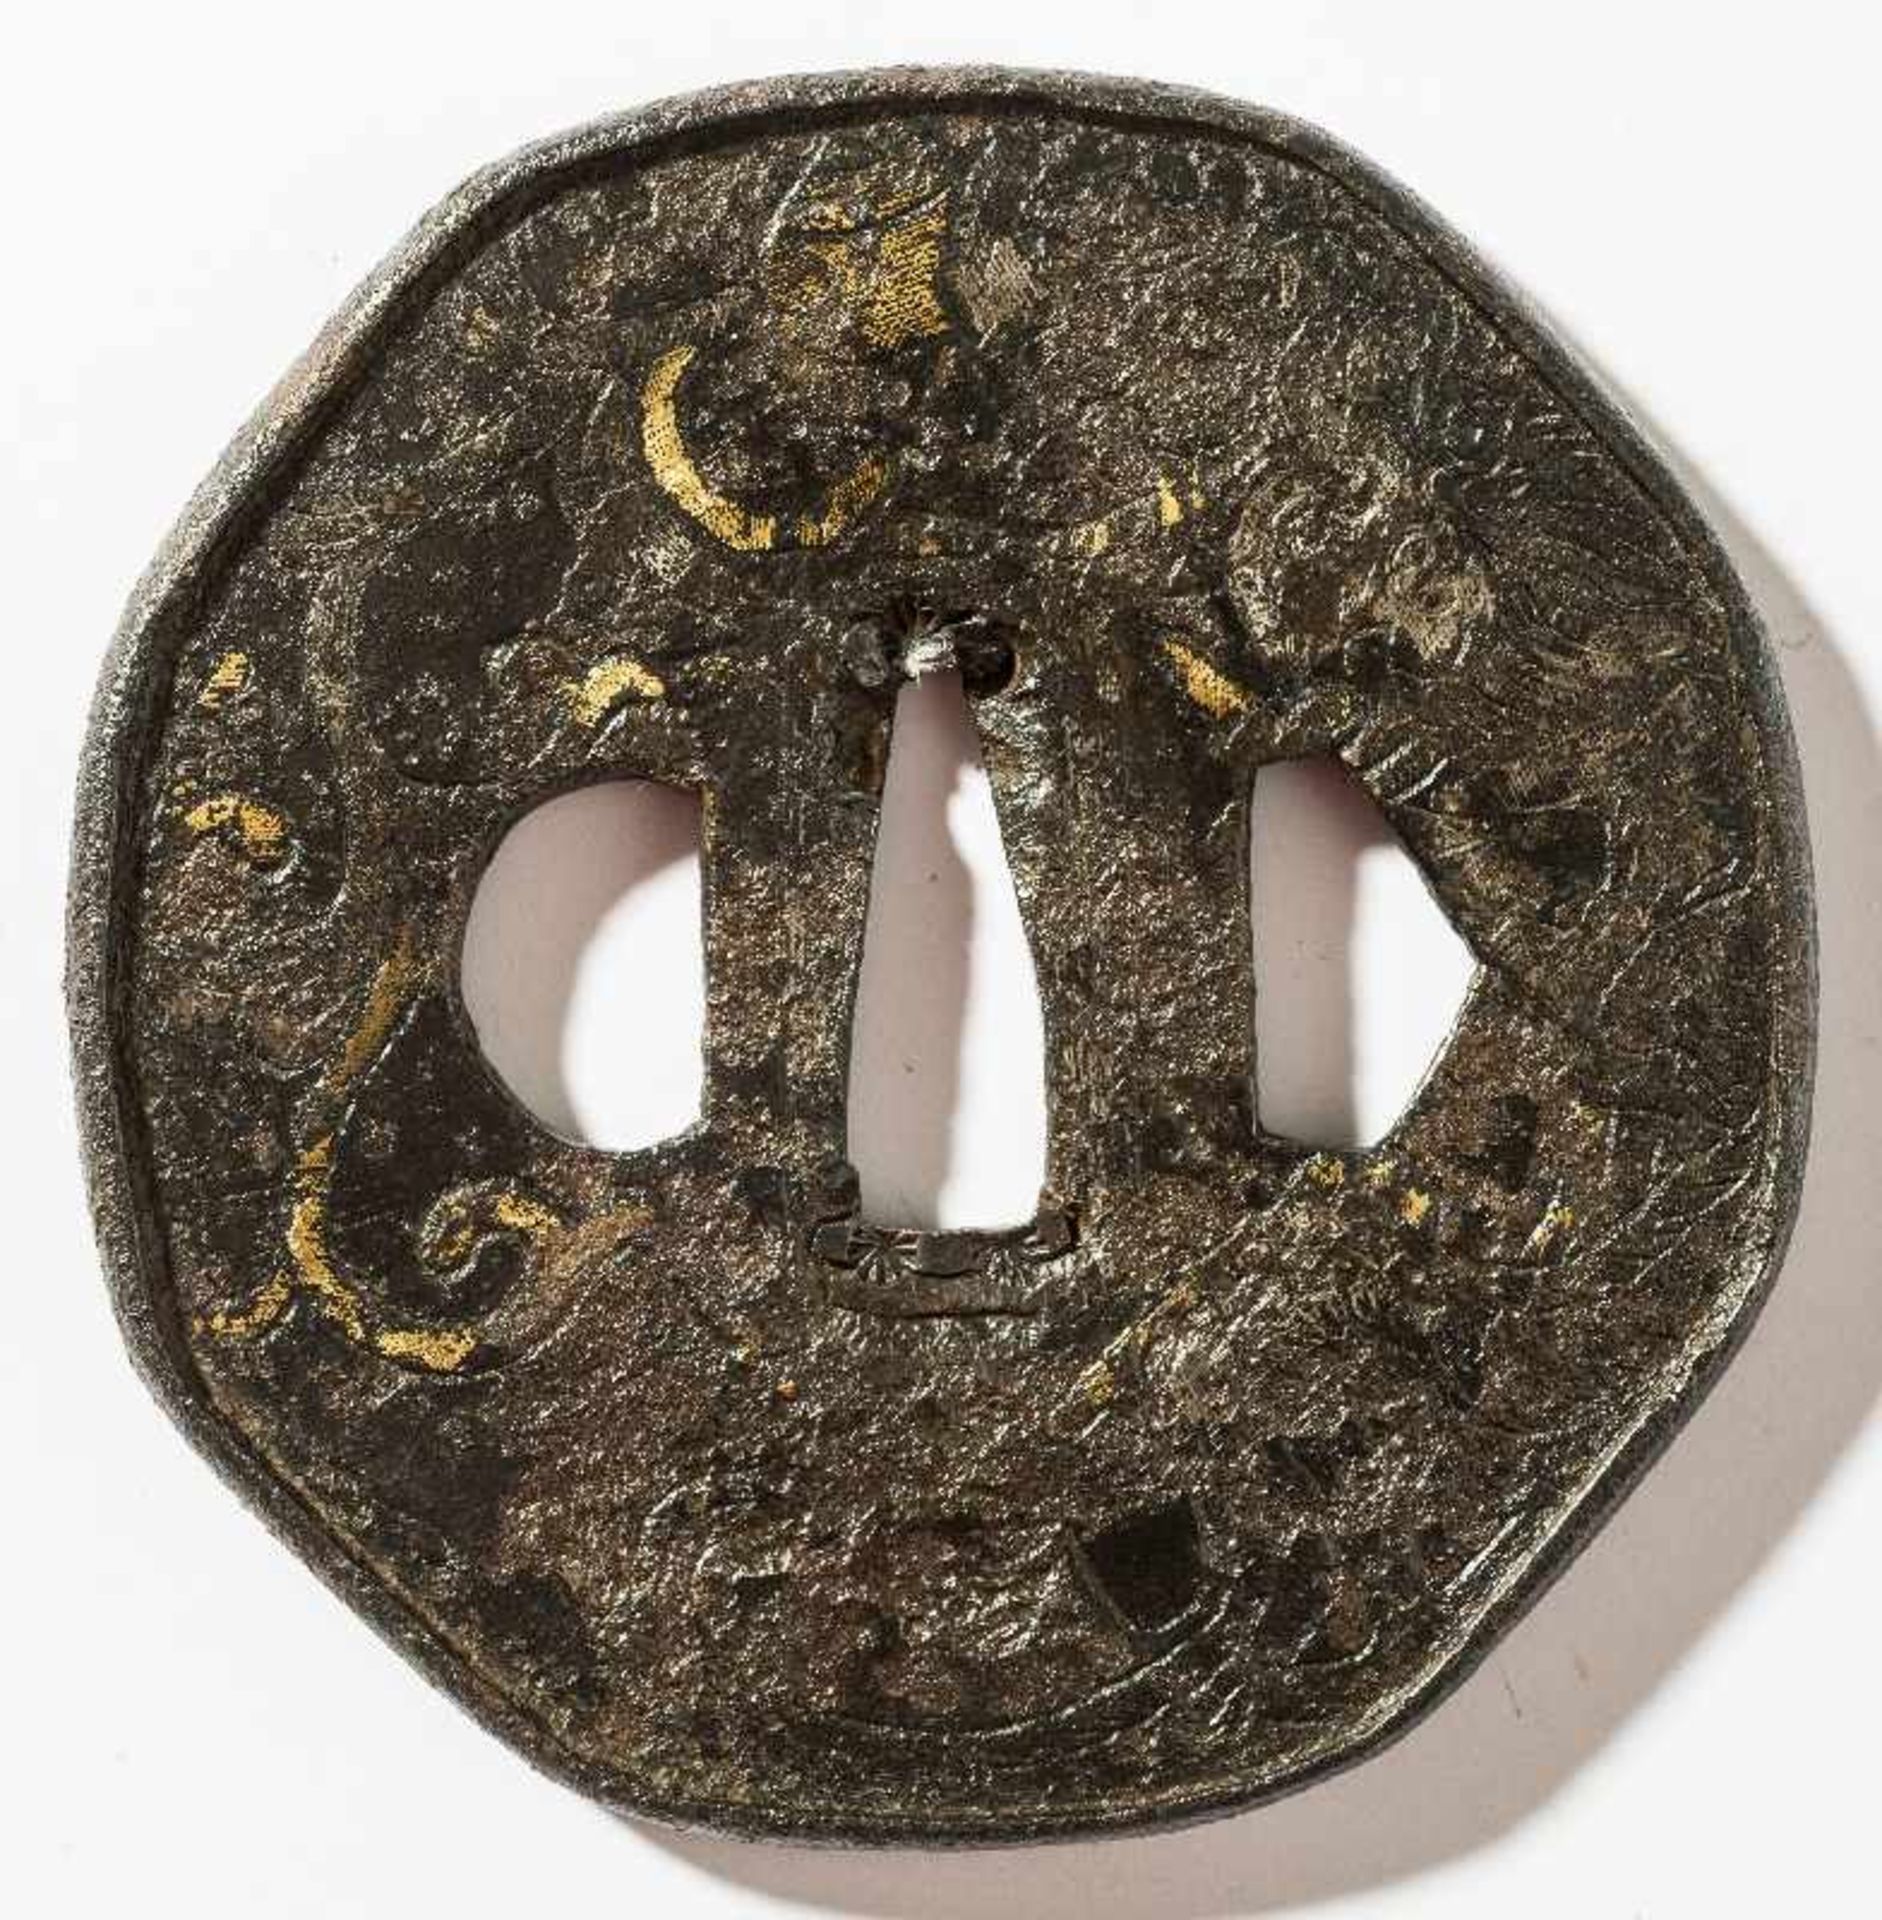 TSUBA MIT HOJU UND DRACHEN Eisen und Gold. Japan, HÖHE 7,9 CM Leicht gerundete oktogonale Form mit - Bild 2 aus 2